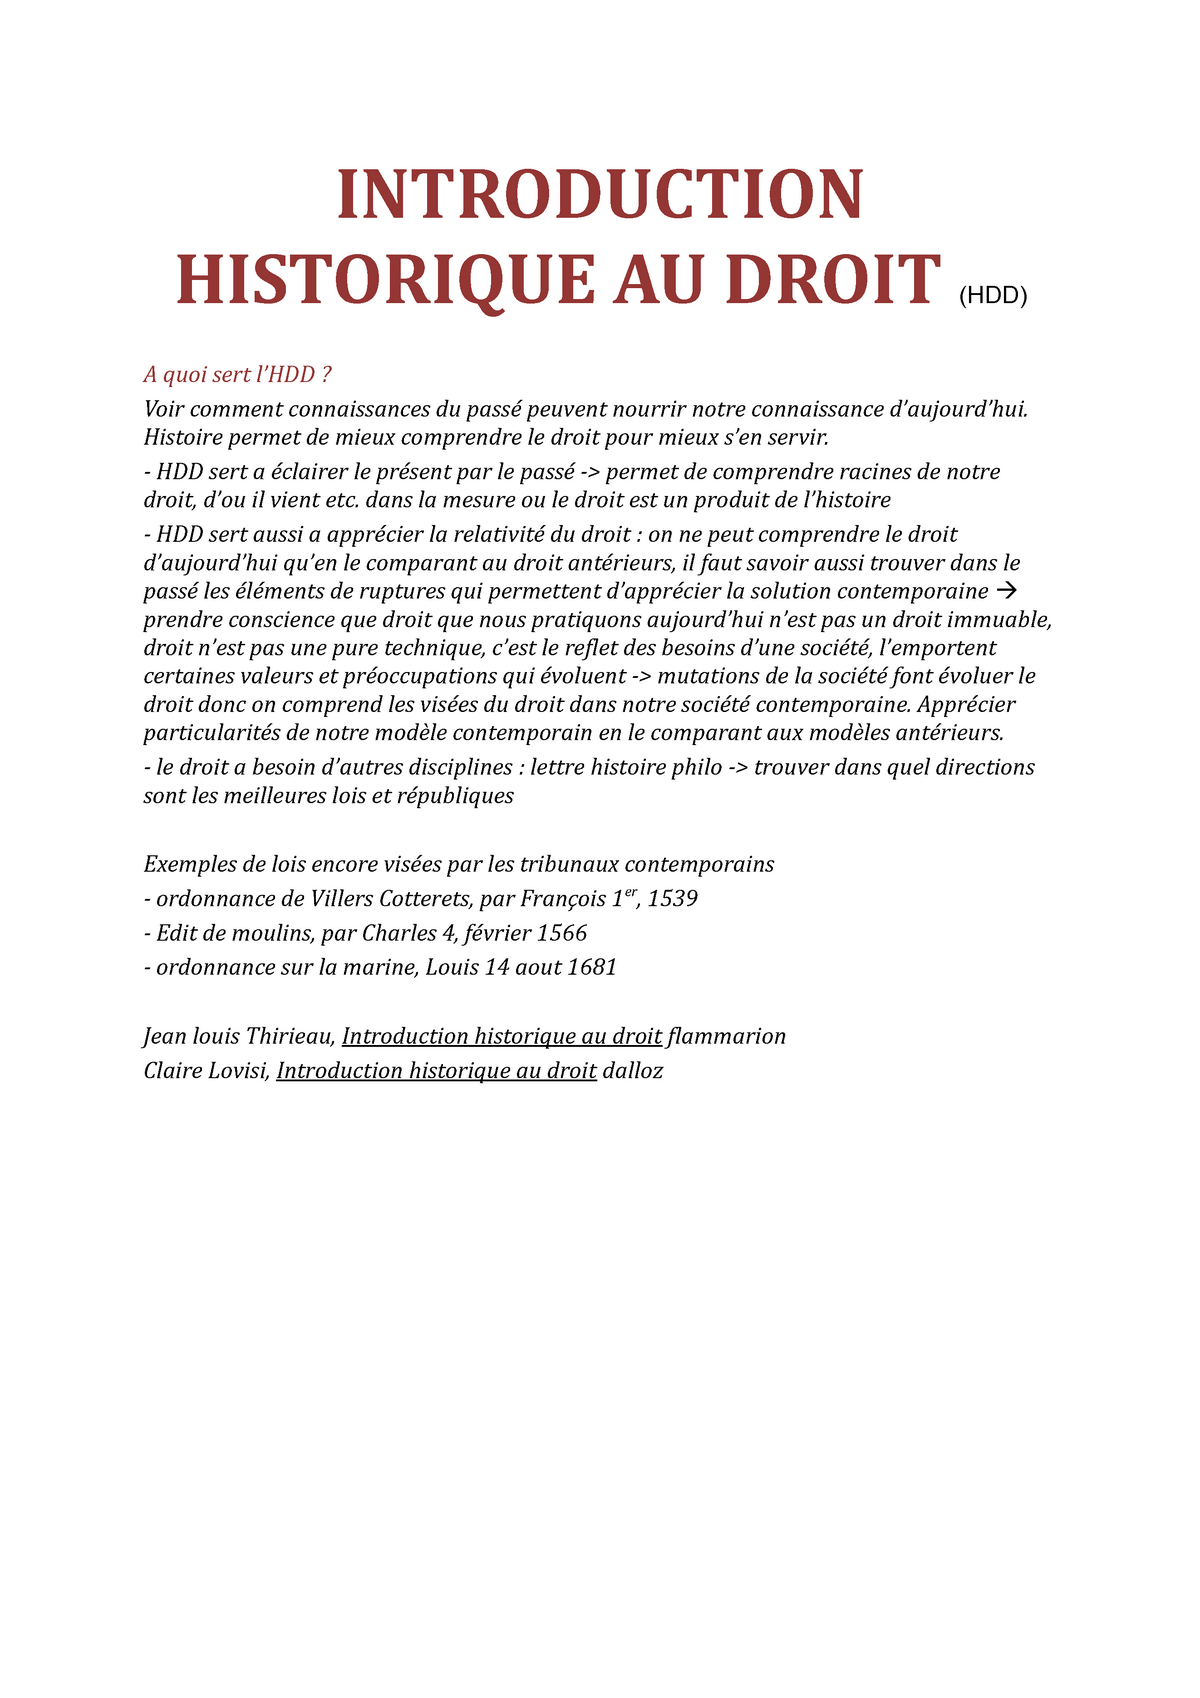 dissertation historique introduction